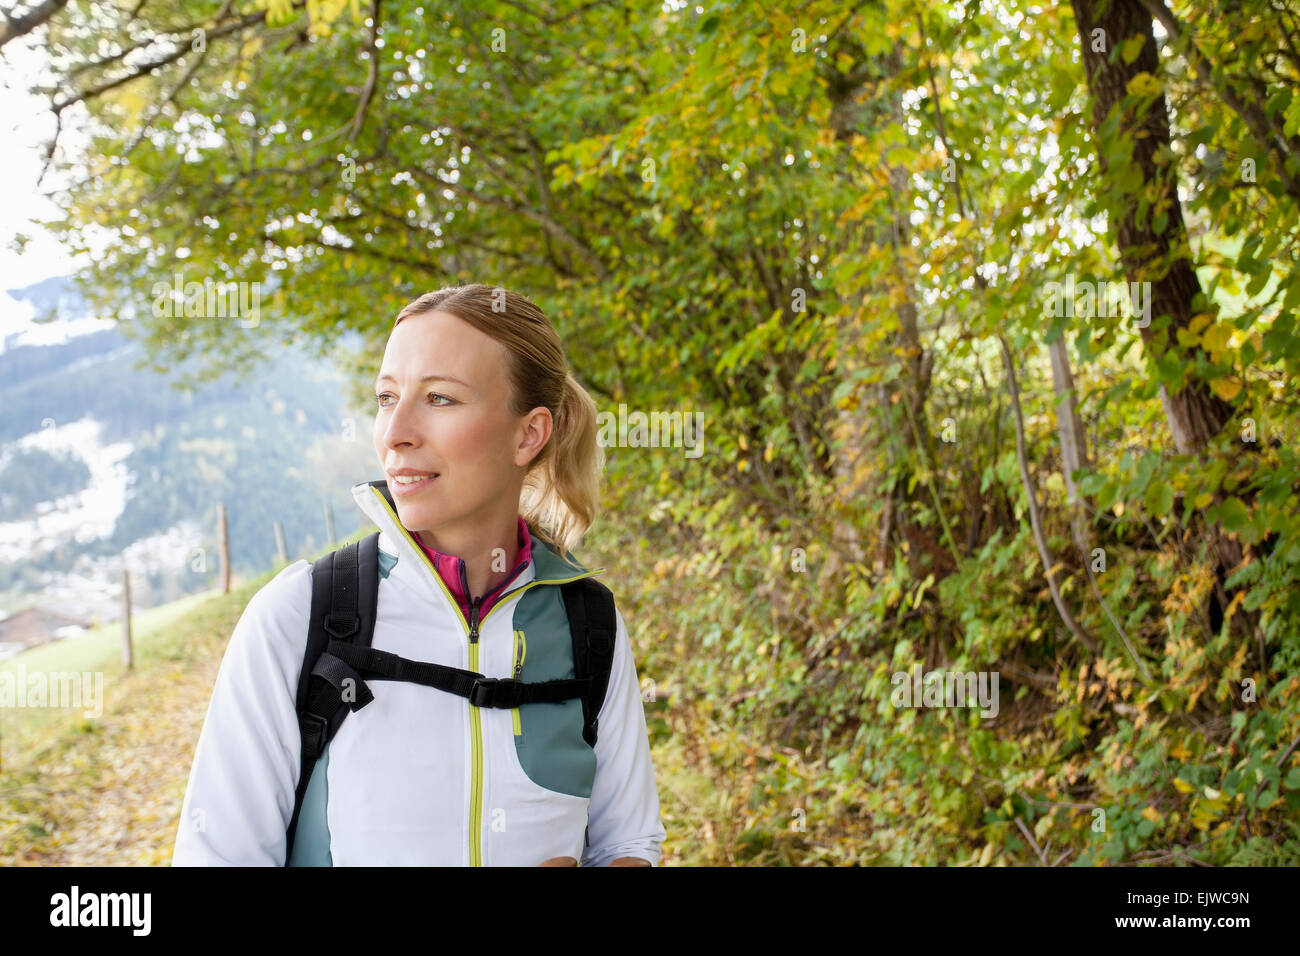 Austria, Salzburger Land, Maria Alm, Woman hiking in mountains Stock Photo